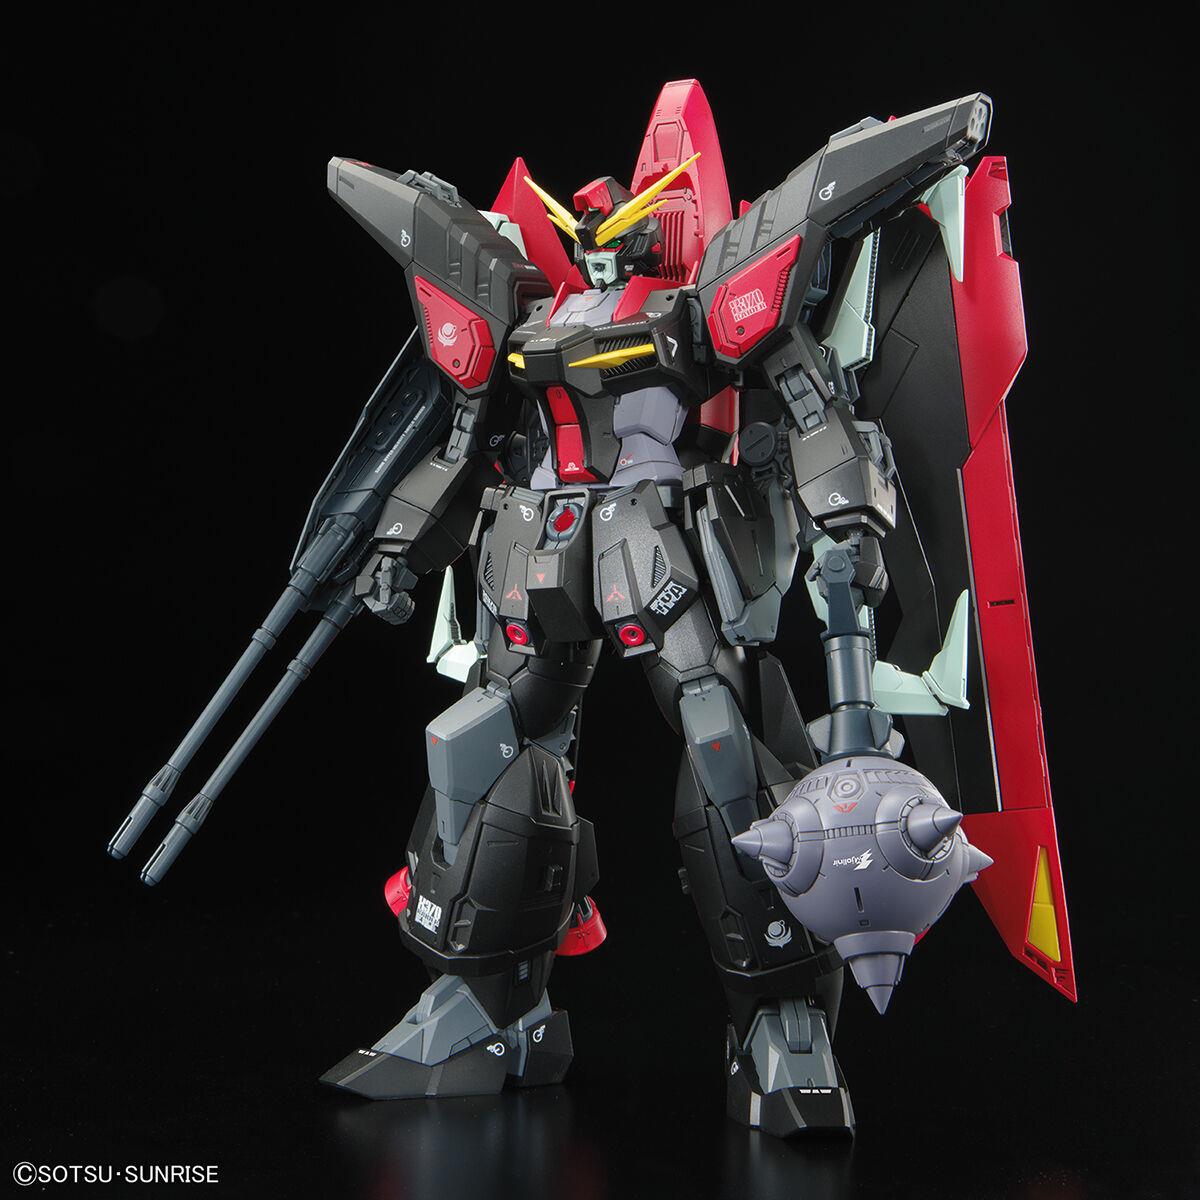 Gundam Seed: Raider Gundam Full Mechanics MG Model